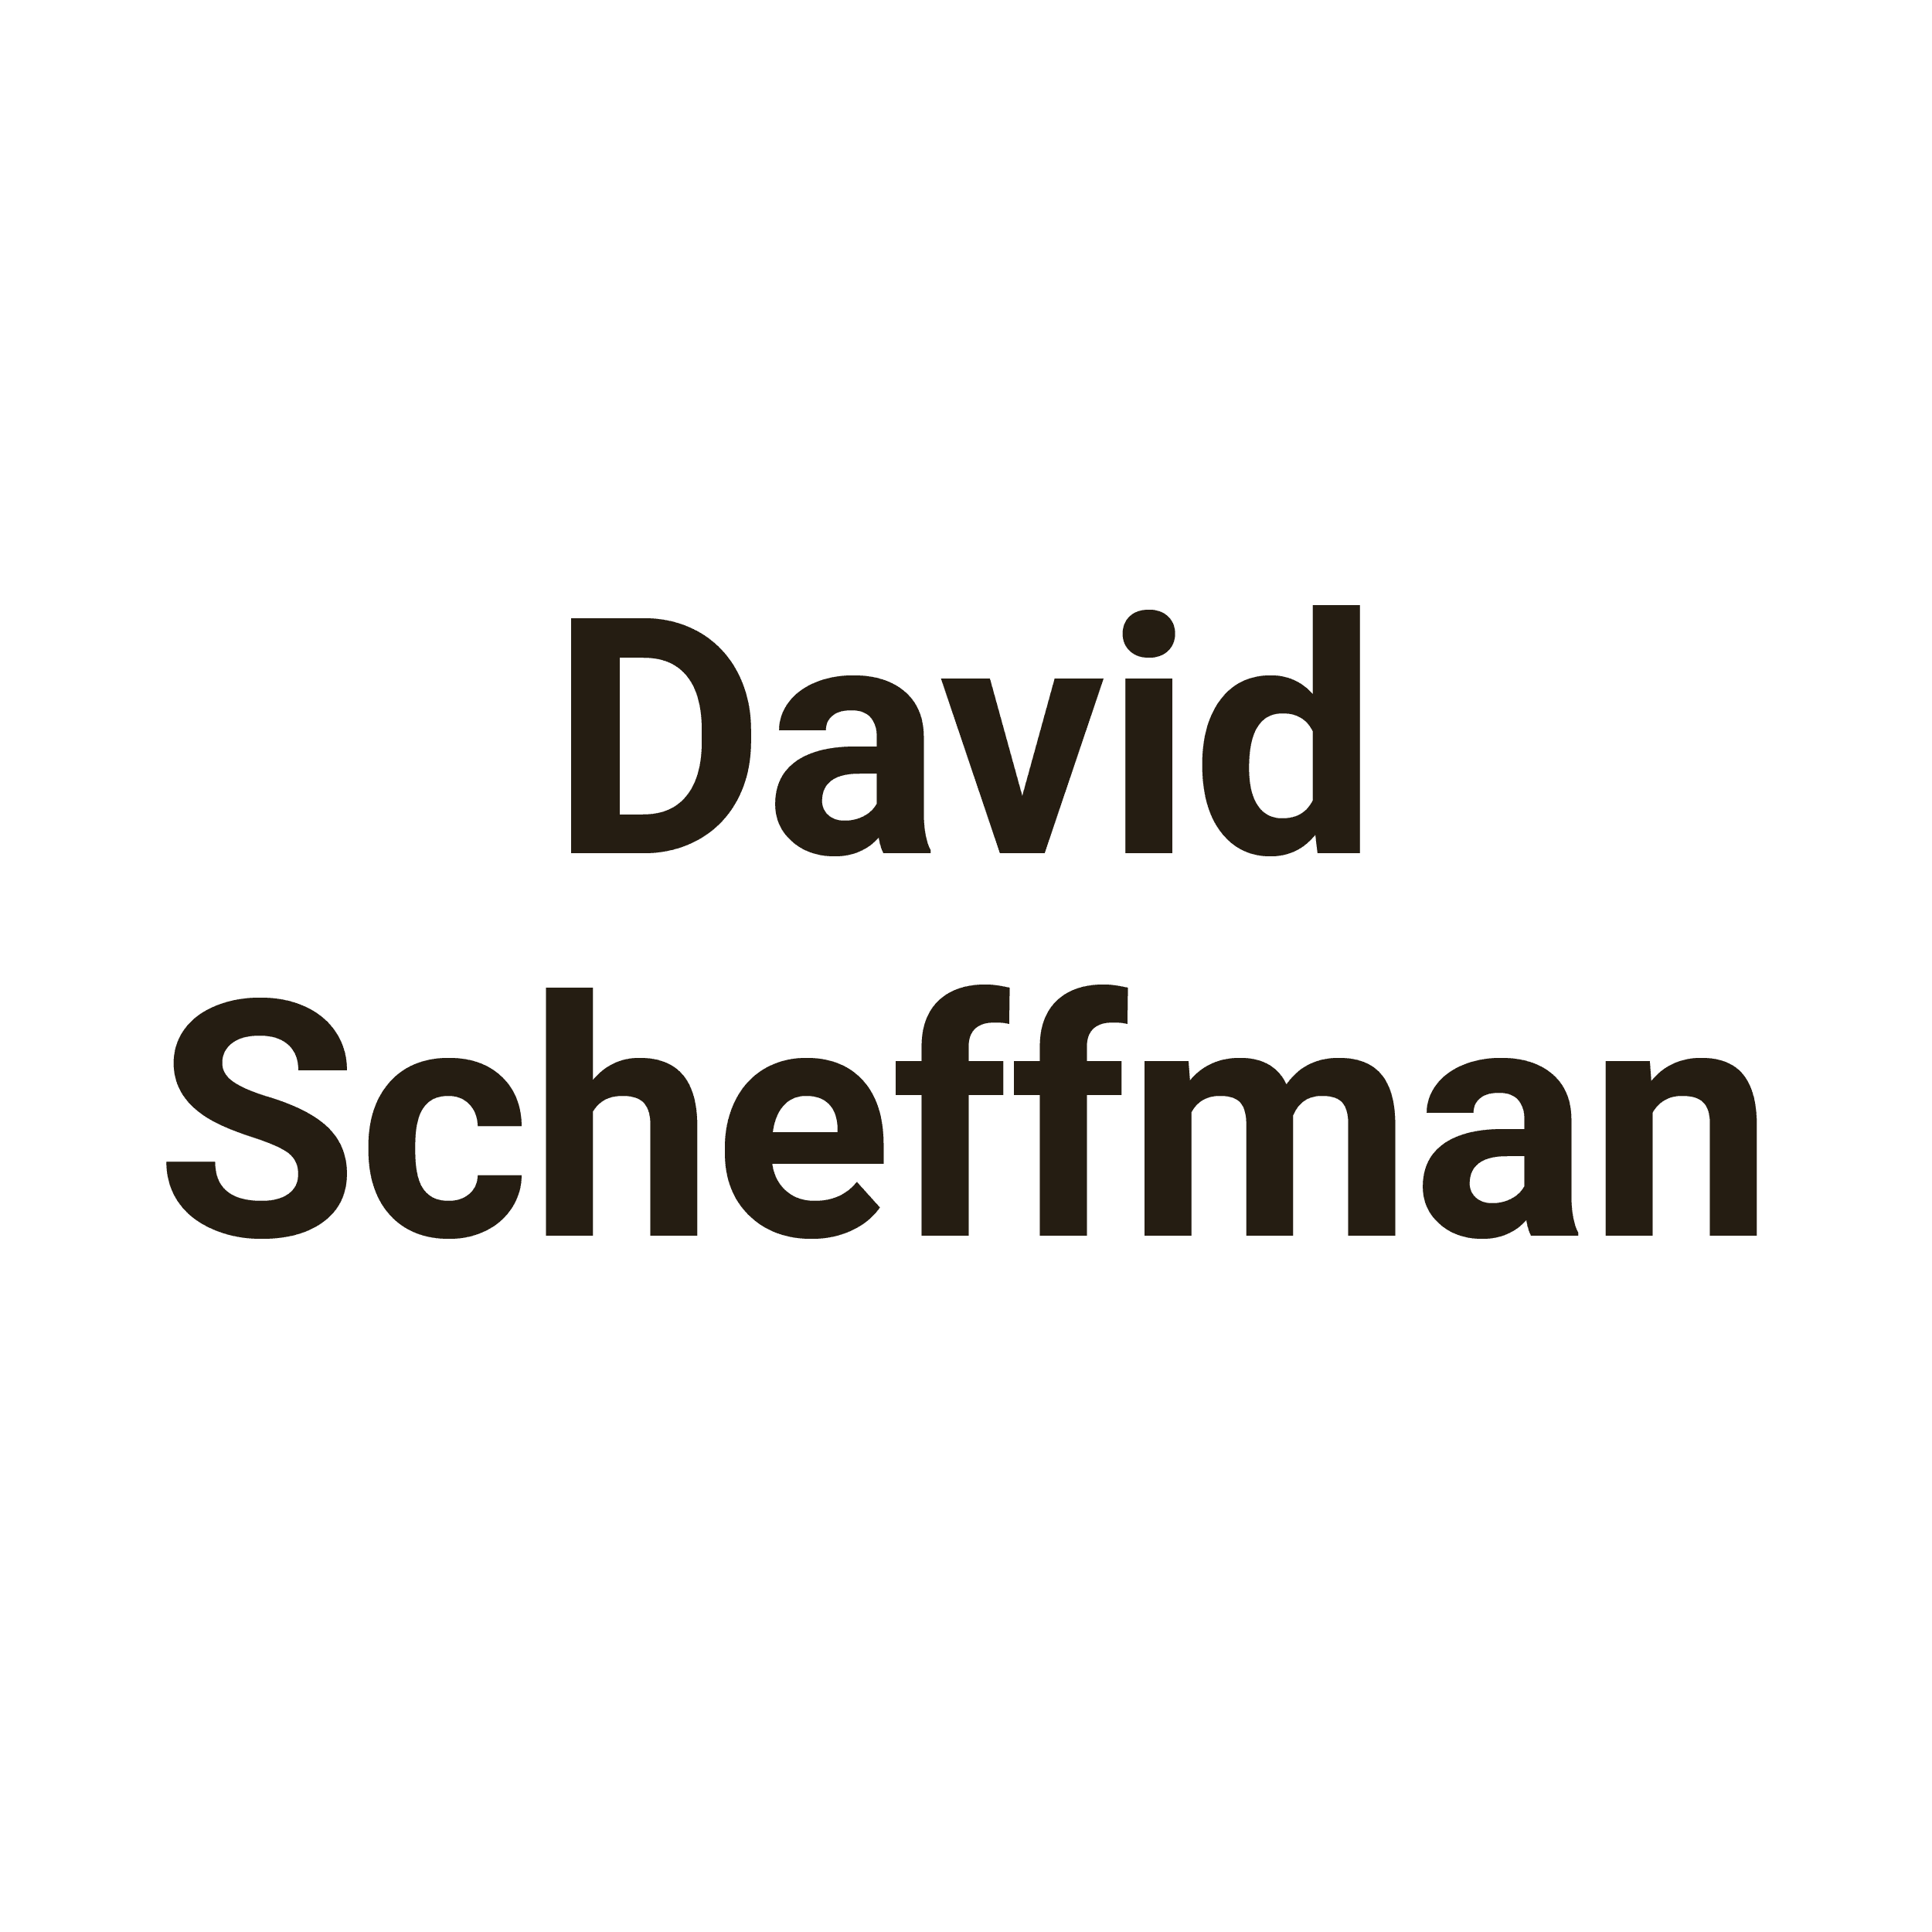 David Scheffman